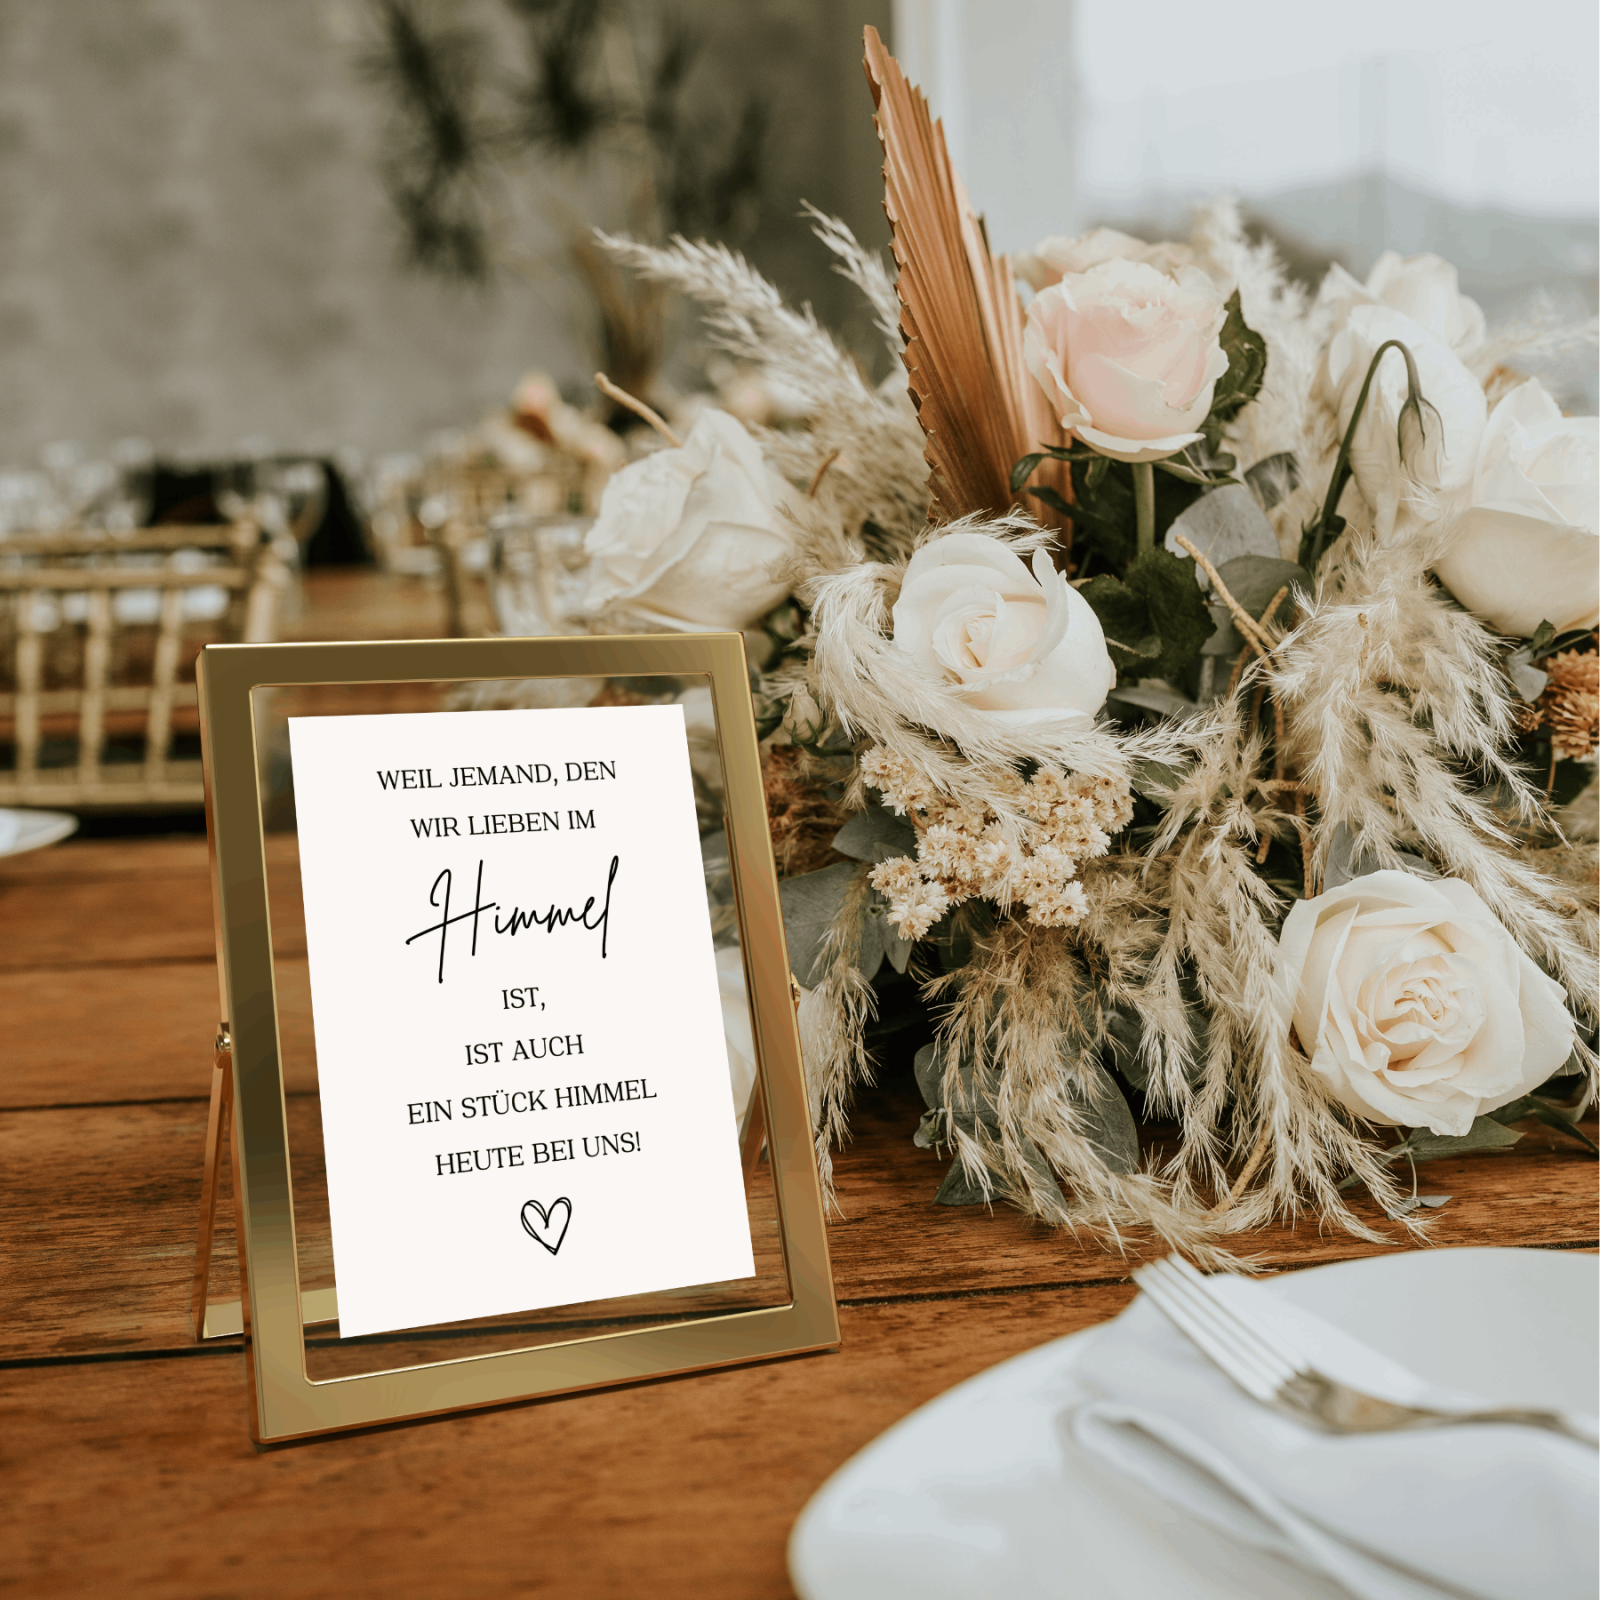 Digitale Vorlage zum Gedenken bei der Hochzeit -Gedenktafel zur Hochzeit-Weil jemand, den wir lieben